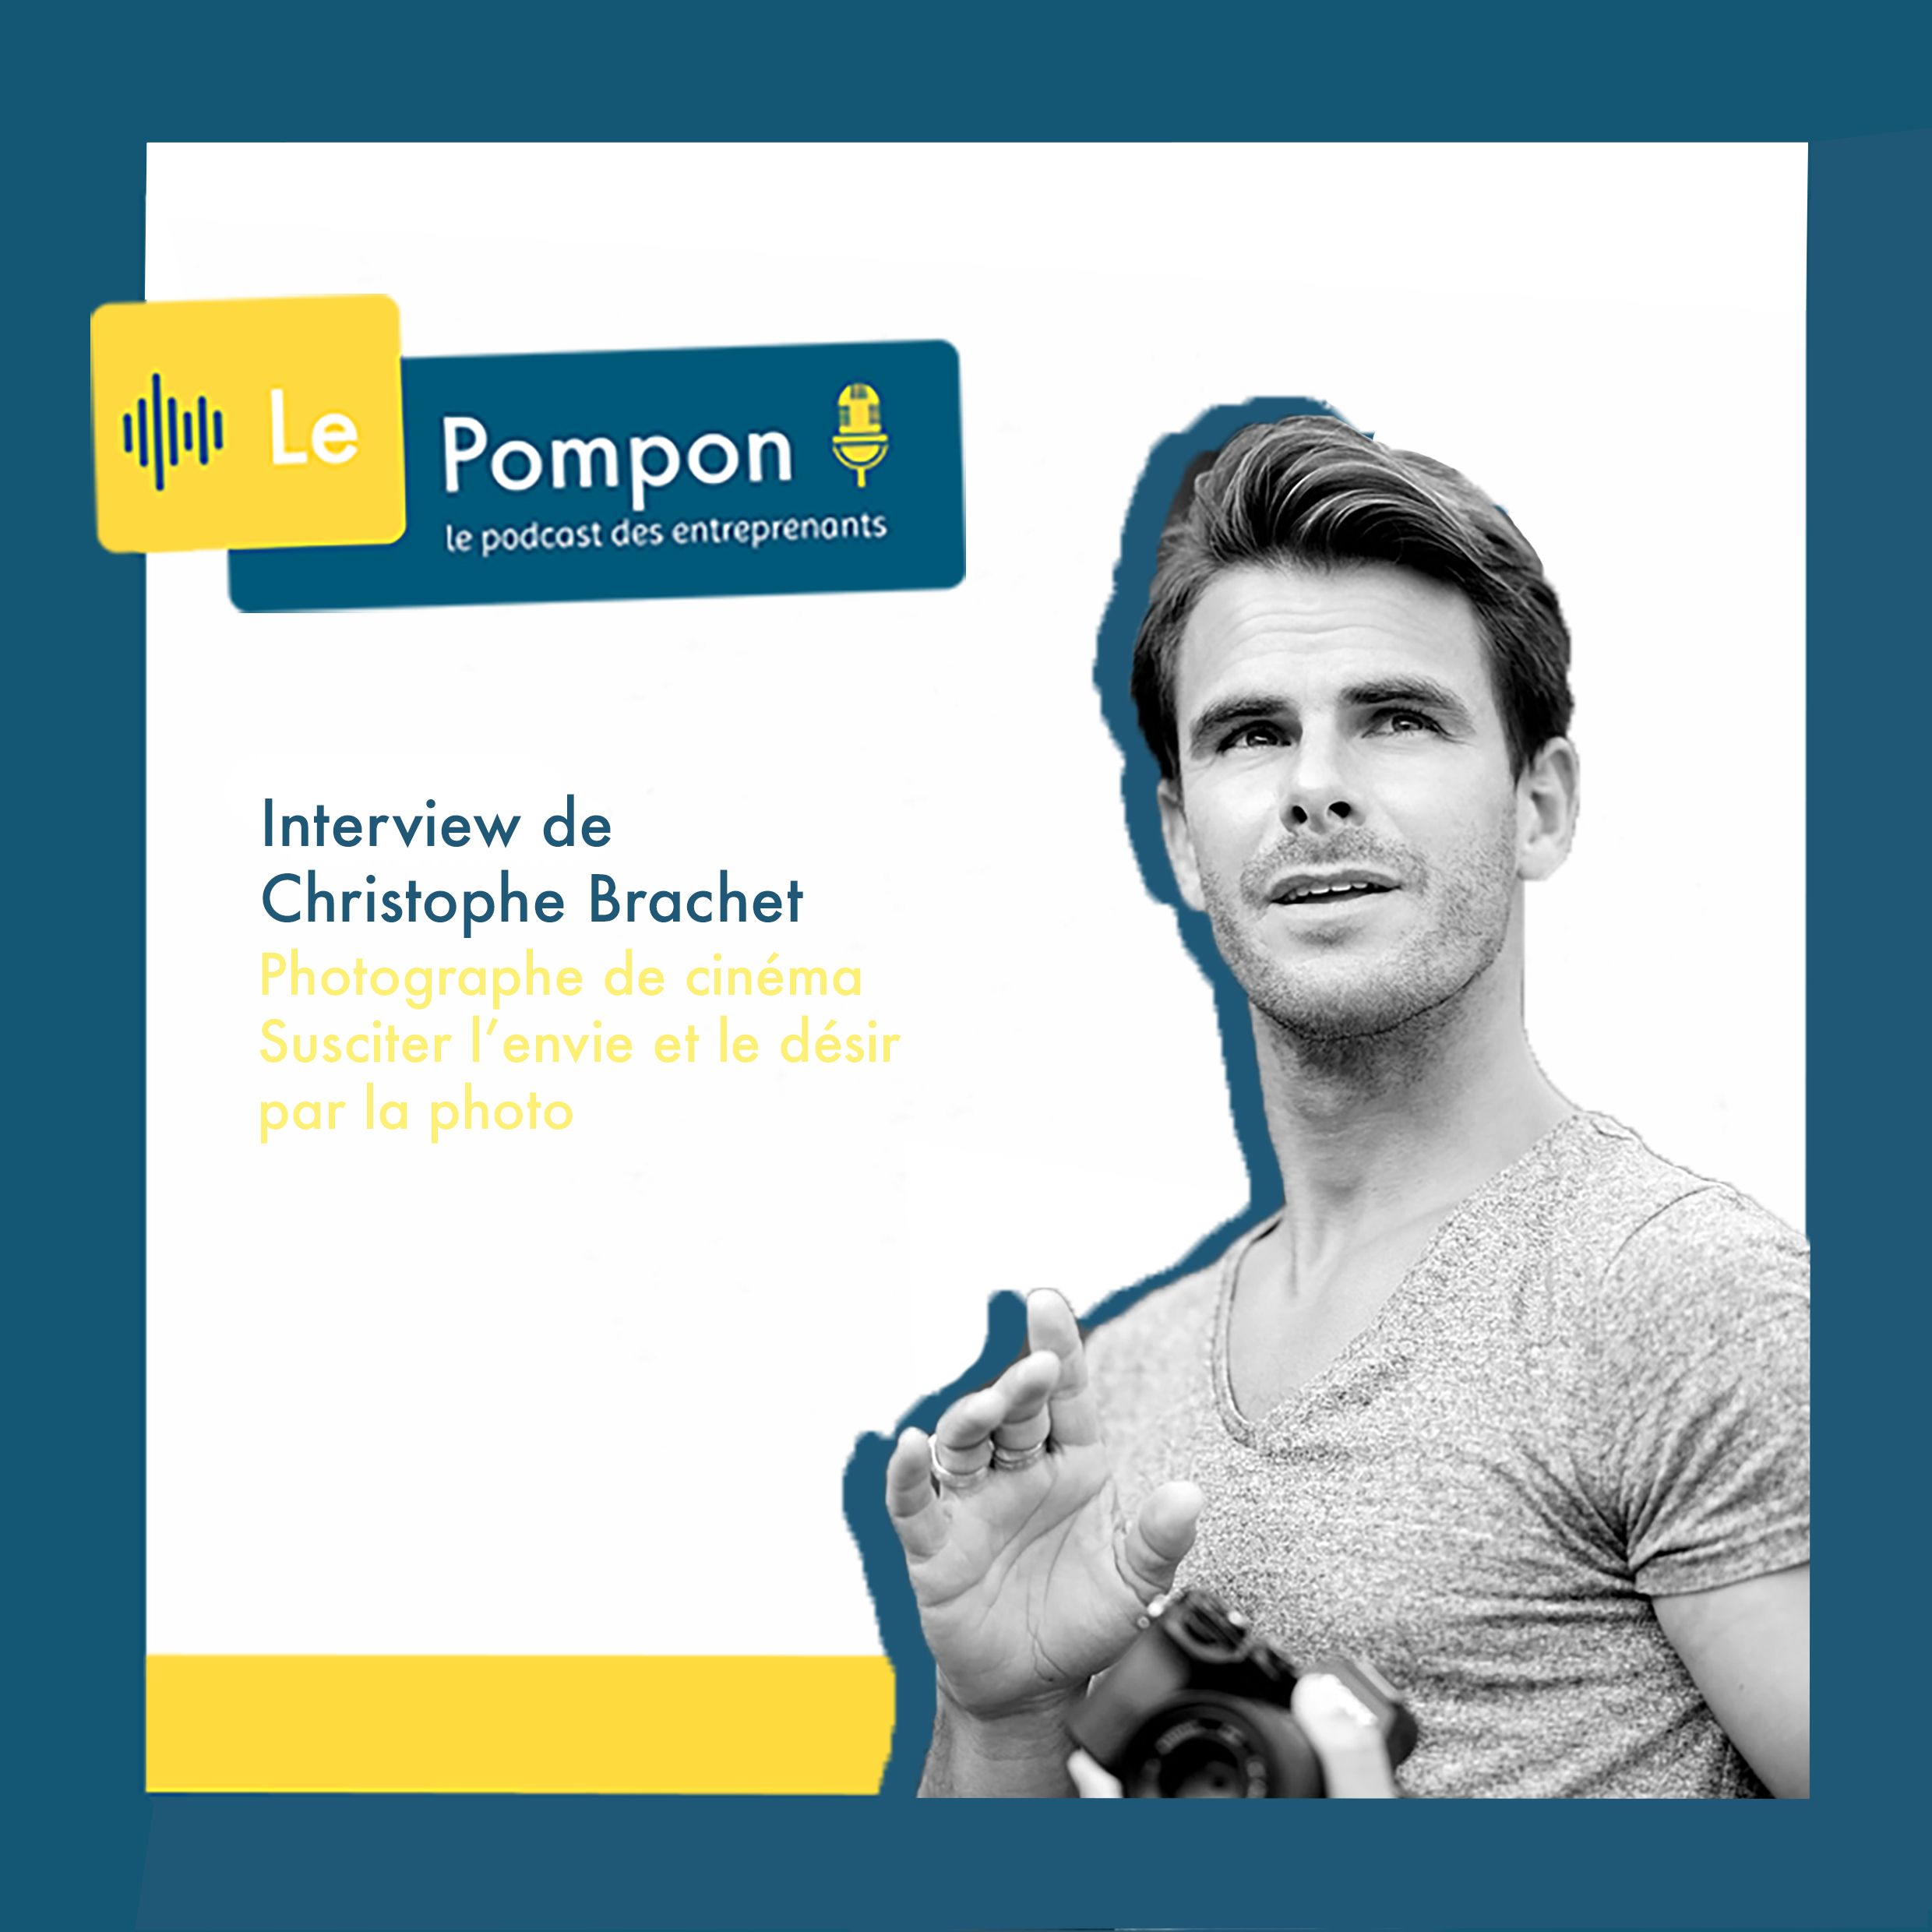 Illustration de l'épisode 23 du Podcast Le Pompon : Christophe Brachet, Photographe de cinéma